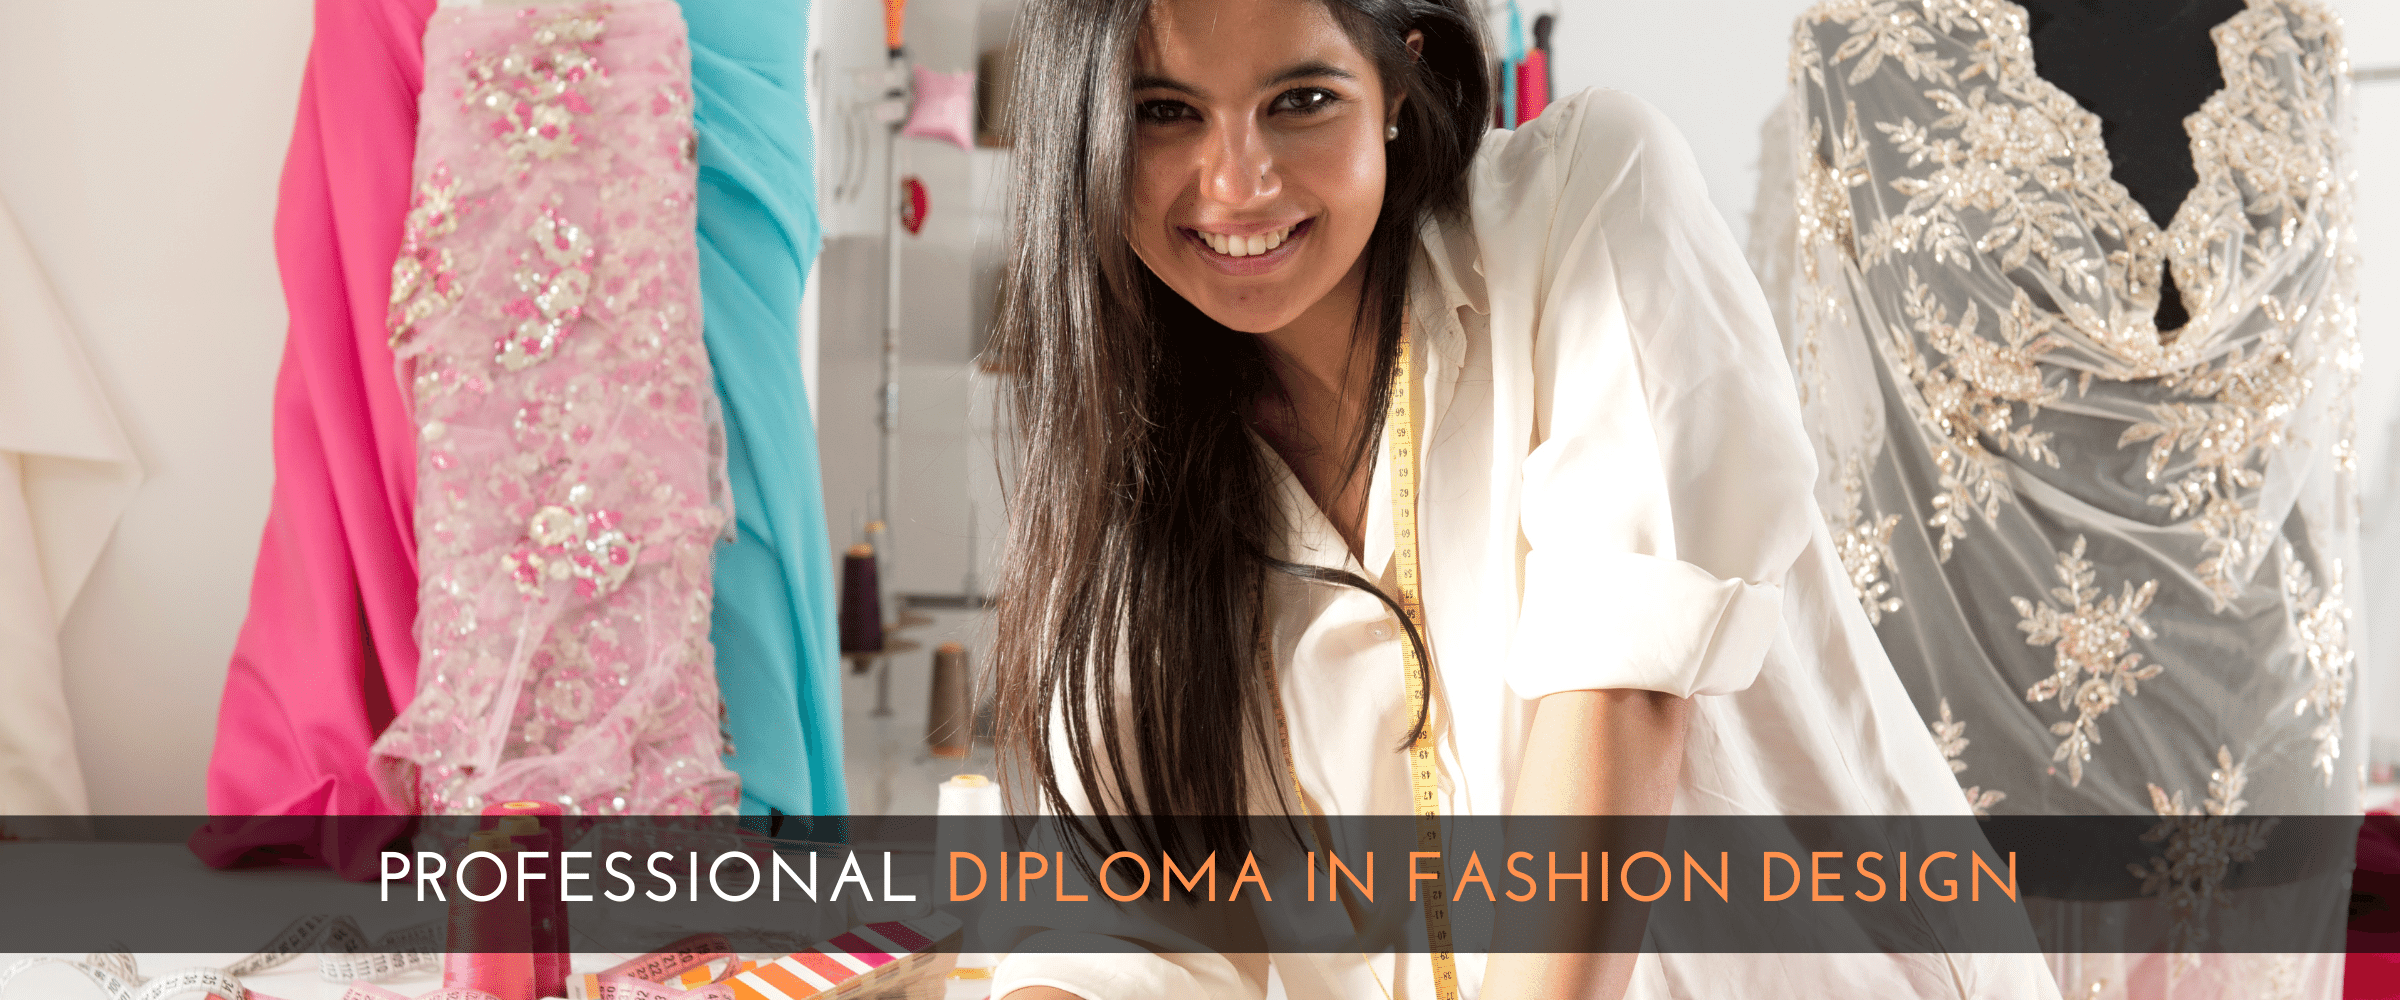 Professional Diploma in Fashion Design LCA